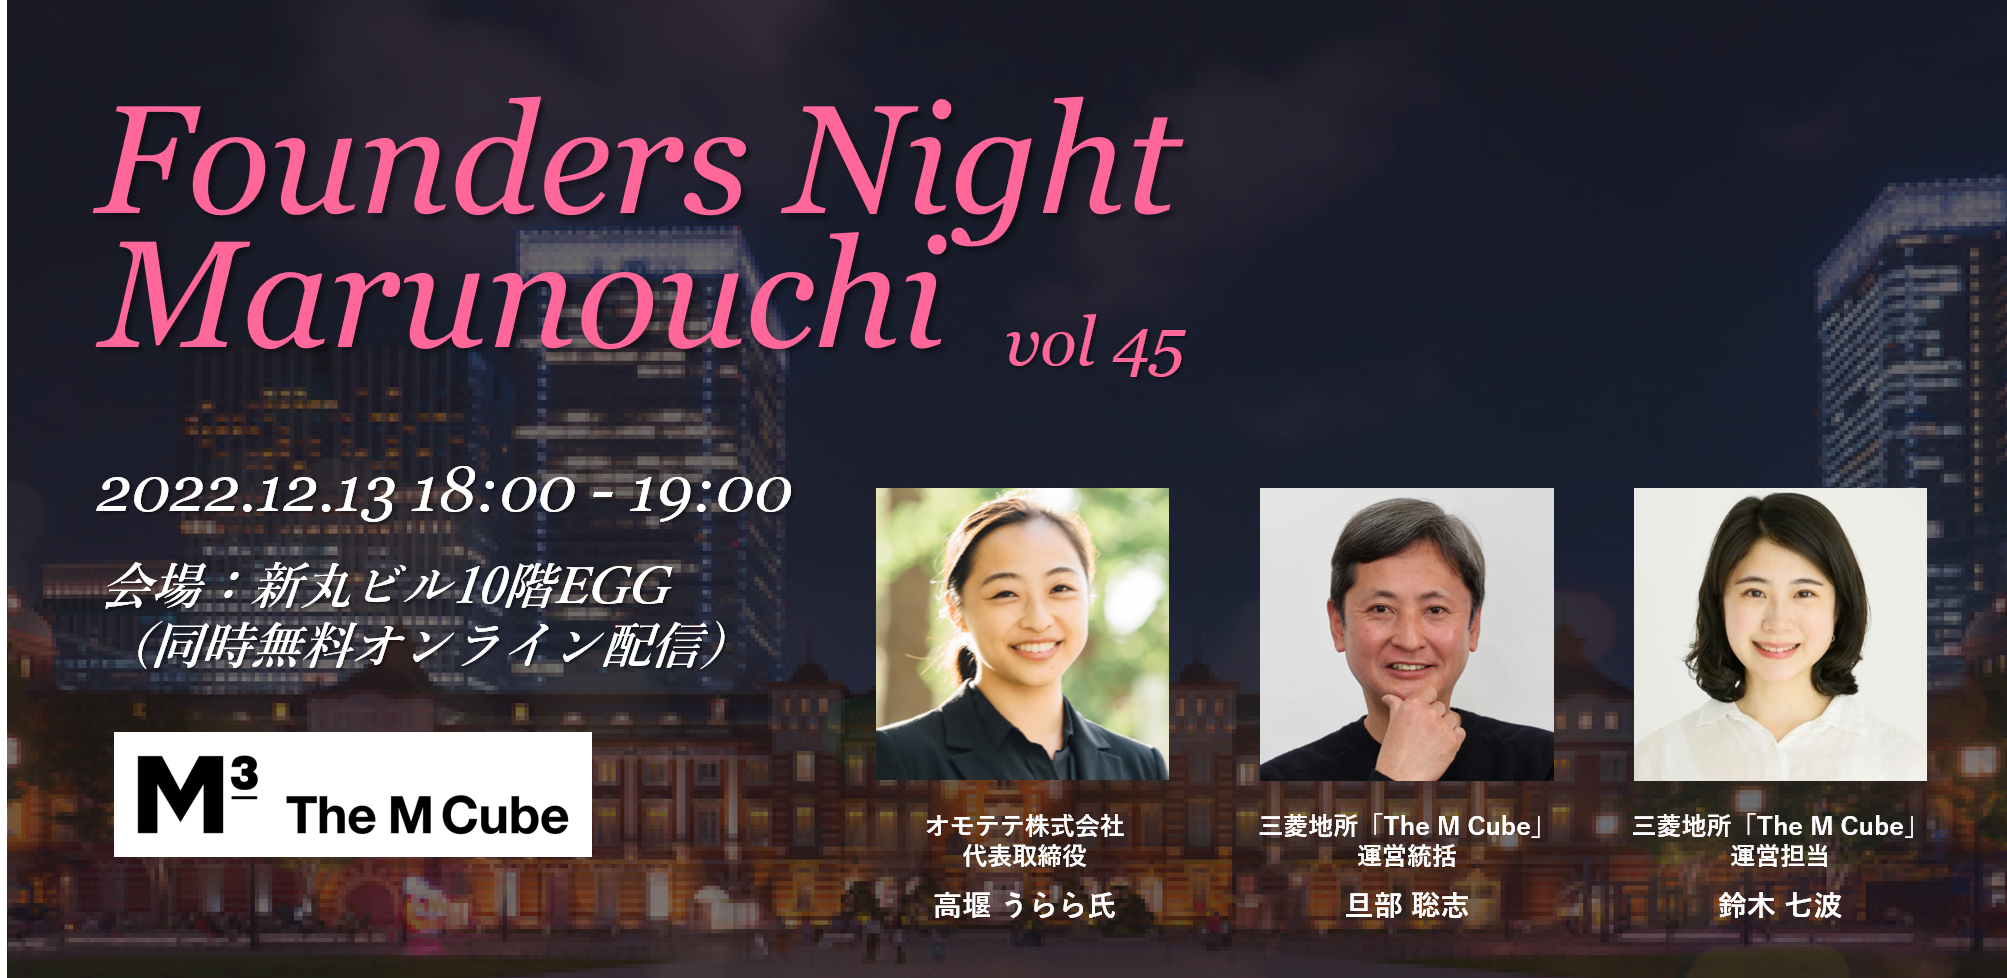 (日本語) Founders Night Marunouchi #45<br>オモテテ代表 高堰うららさん編<br>2022/12/13 会場参加・オンライン